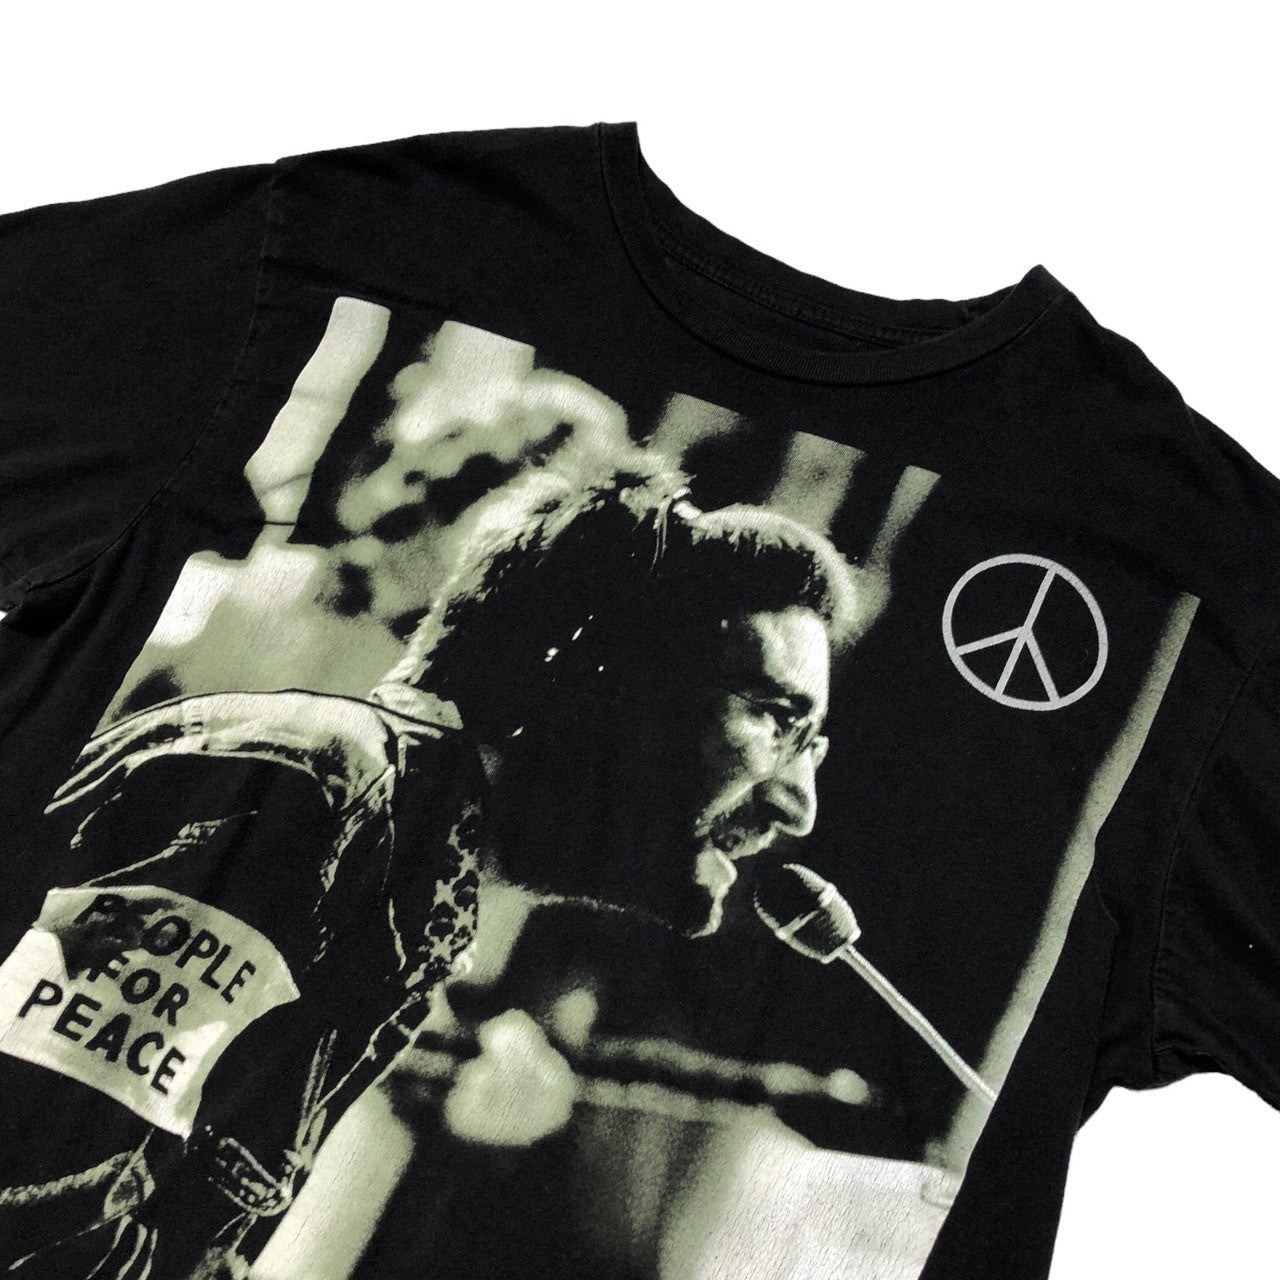 Hanes(ヘインズ) 2011's "john Lennon" band T-shirt ヴィンテージ バンド Tシャツ M ブラック ©2011 apple corps ltd公式 ジョンレノン オノヨーコ ビートルズ(The Beatles)